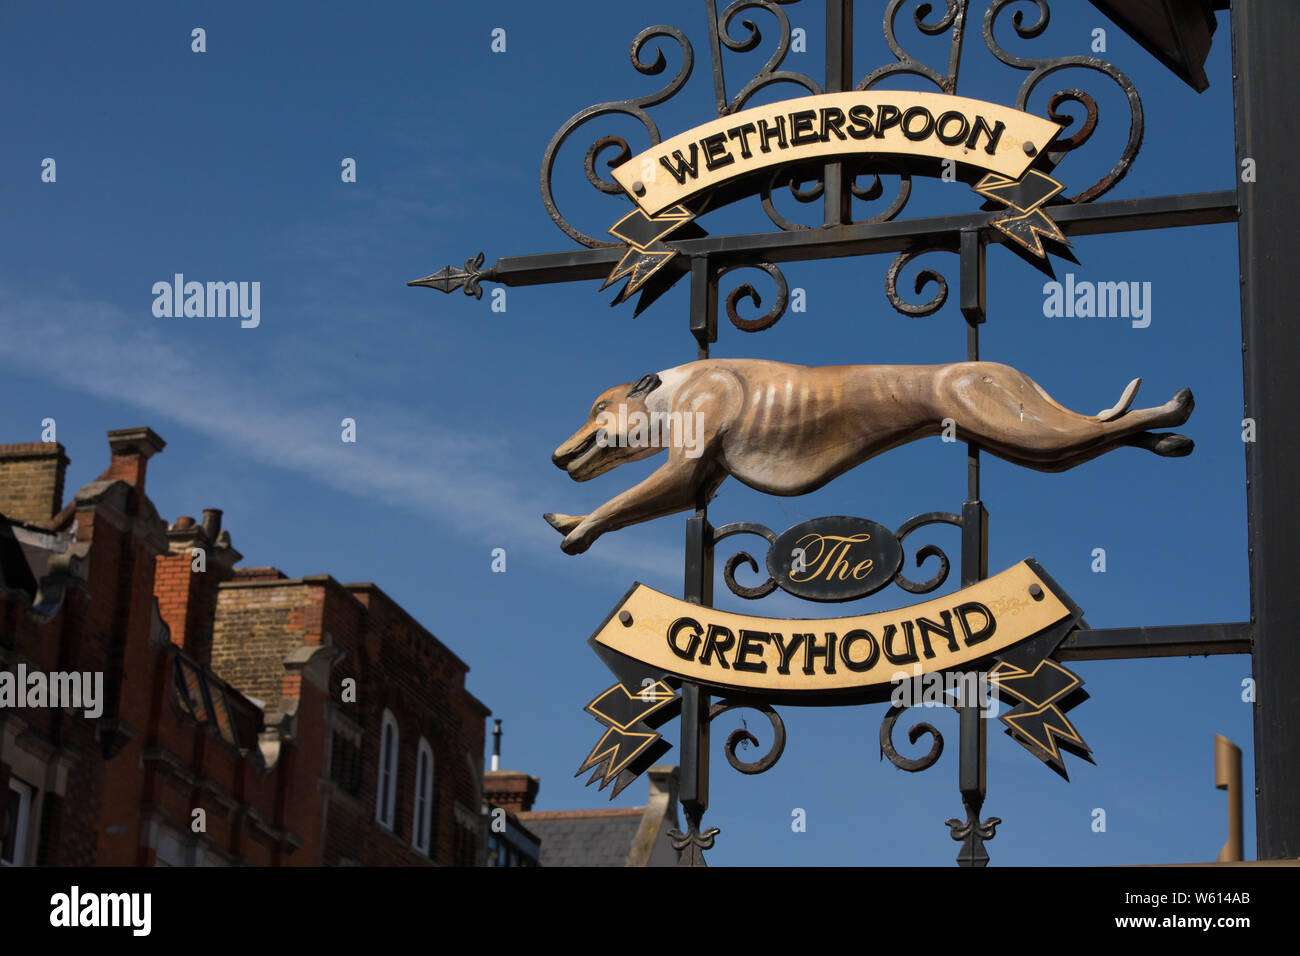 wetherspoon greyhound signage Stock Photo